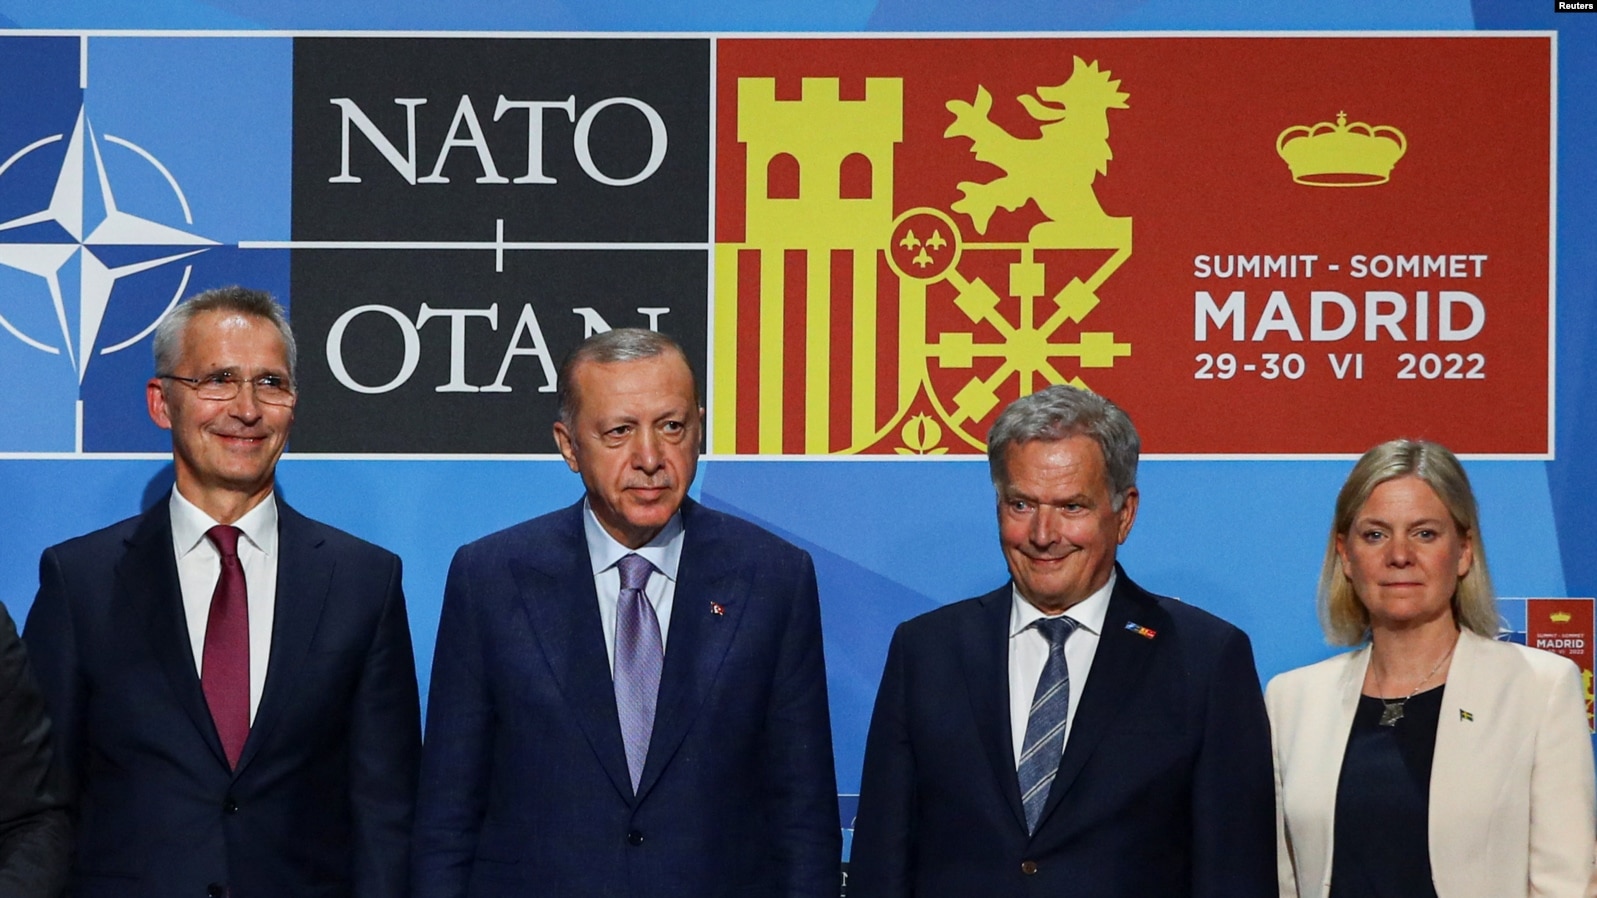 Йенс Столтенберг, Реджеп Эрдоган, Саули Ниинистё, Магдалена Андерсон на встрече в Мадриде, 28 июня 2022 года